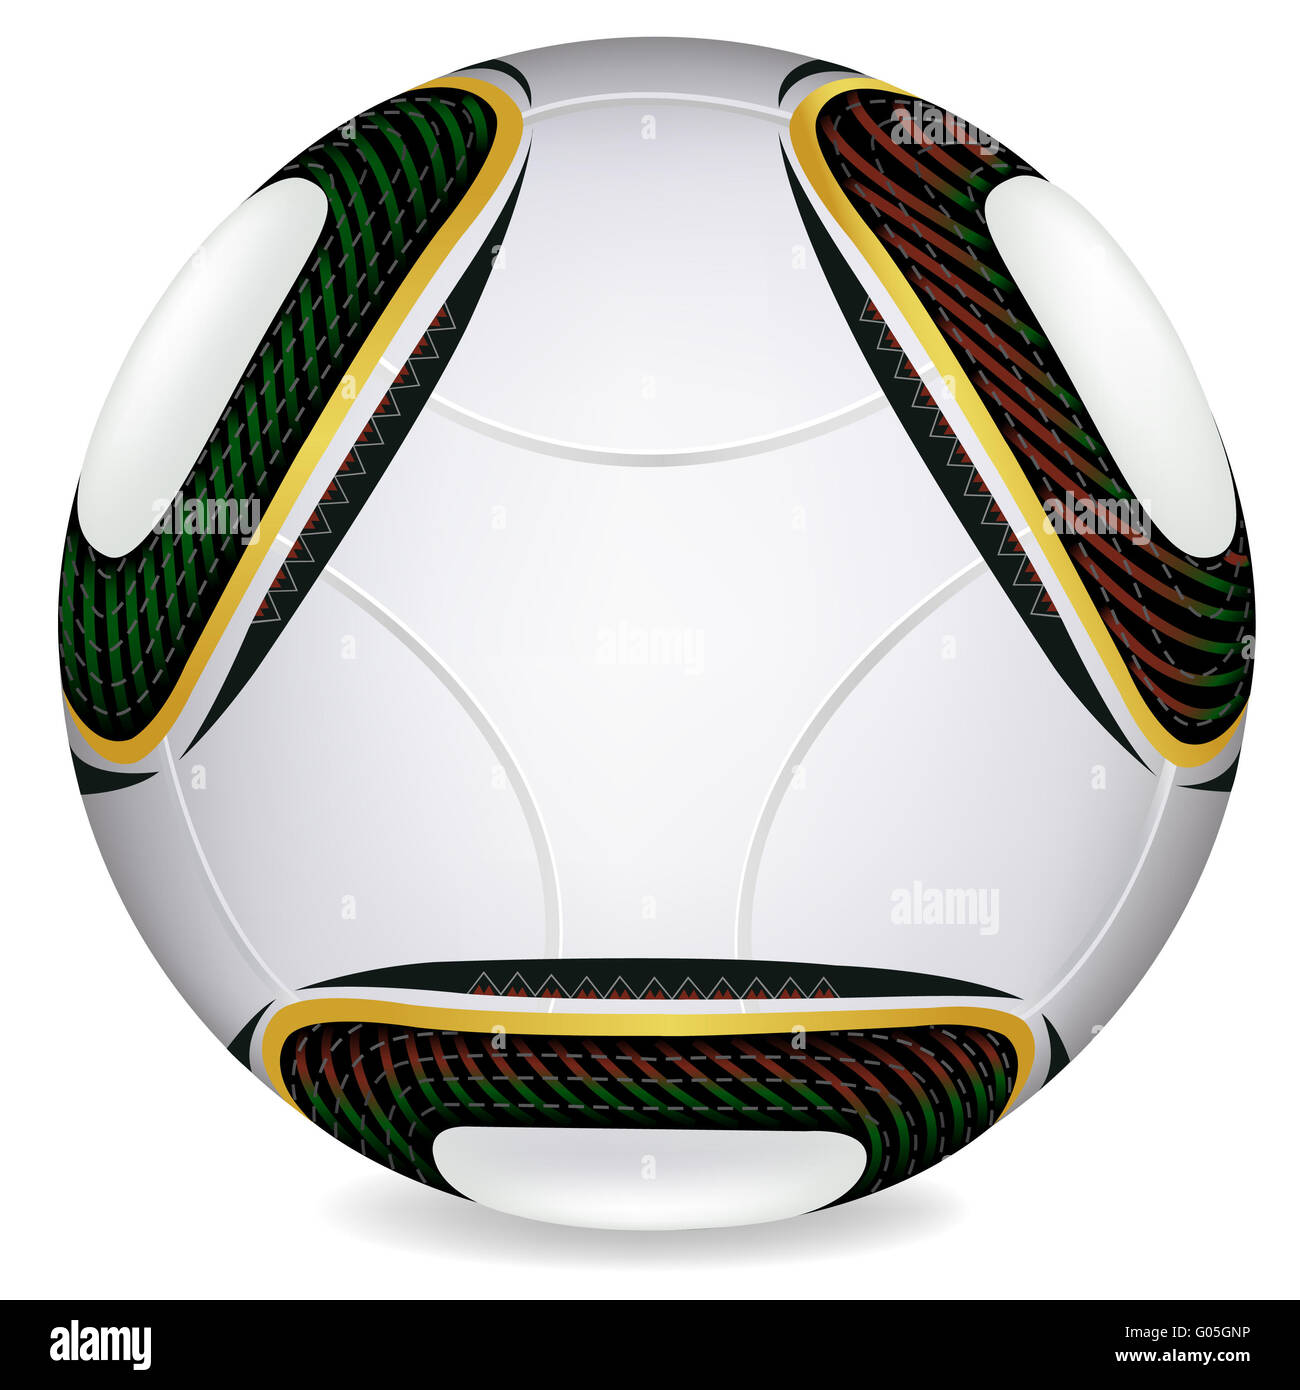 World Cup 2010 Jabulani soccer ball In Vector Stock Photo